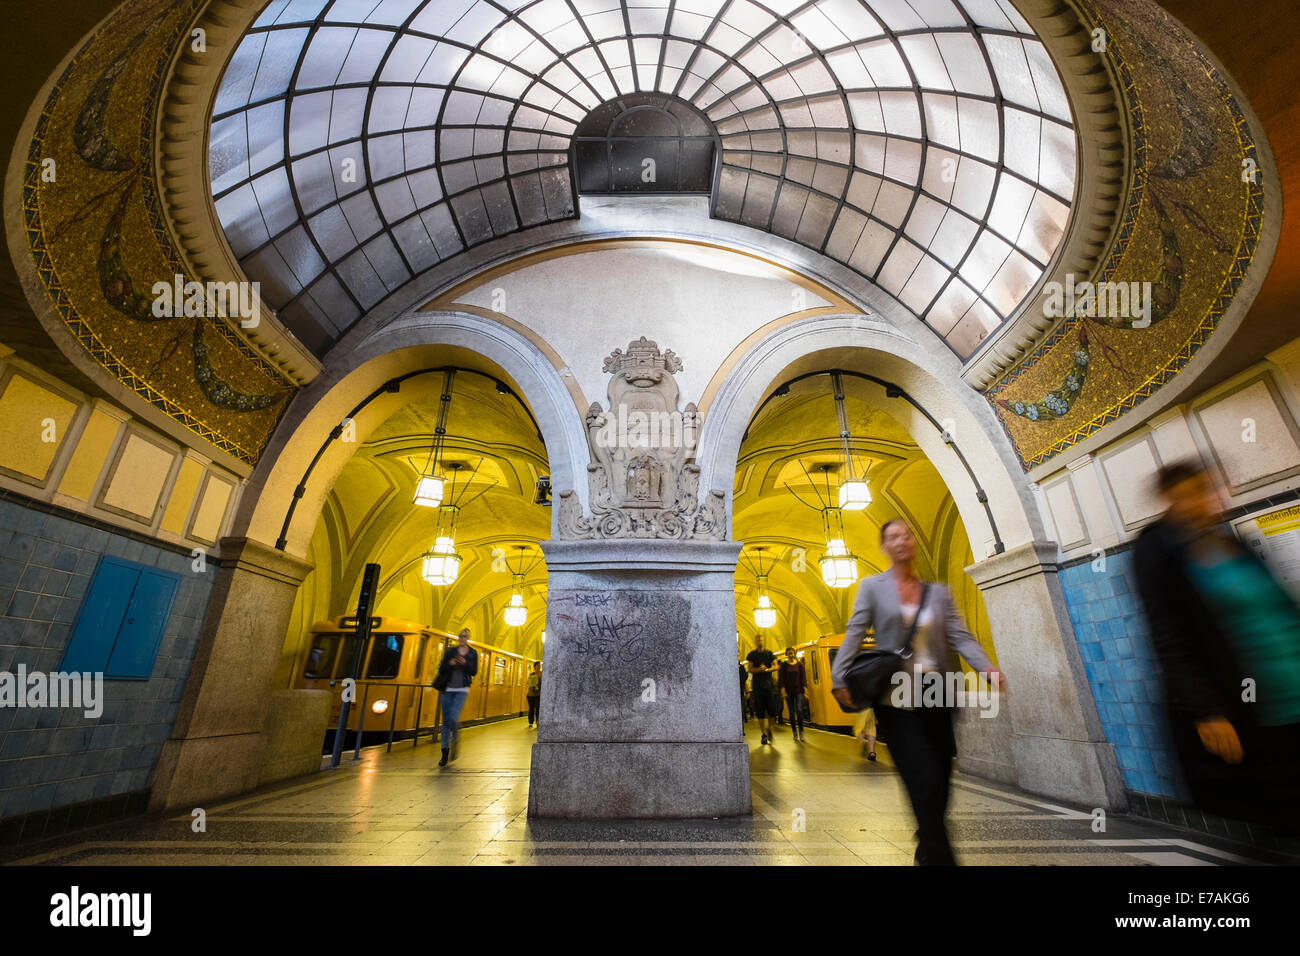 Reich verzierte alte Architektur am Heidelberger Platz Bahnhof am Berliner u-Bahn-System in Deutschland Stockfoto